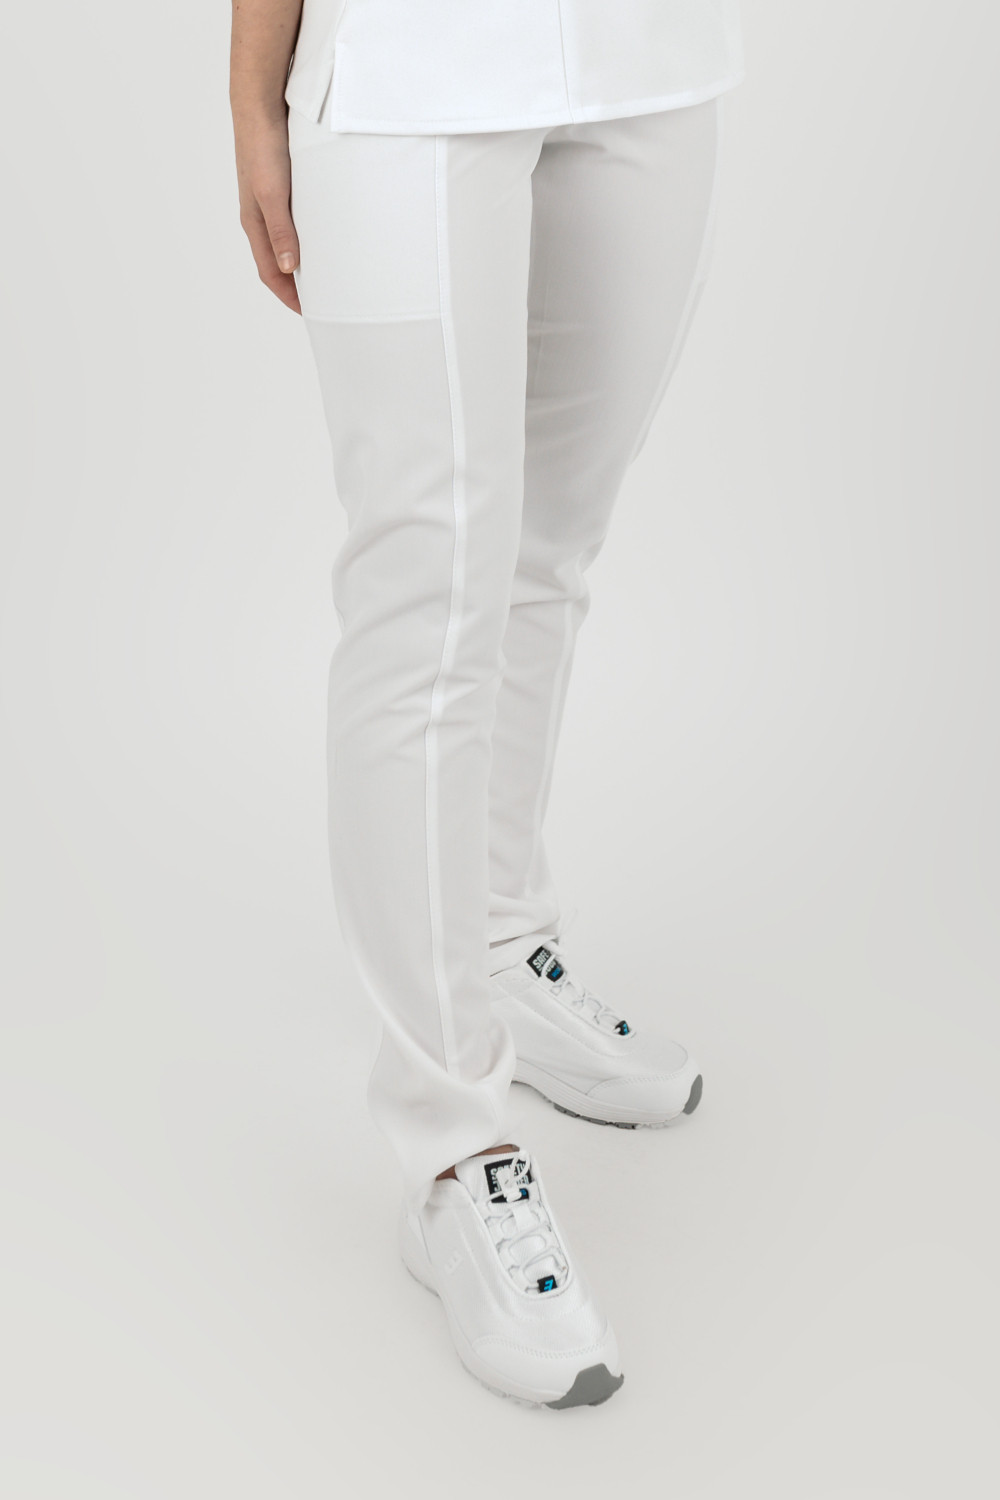 Elastyczne spodnie medyczne damskie / scrubs M-200XC biały